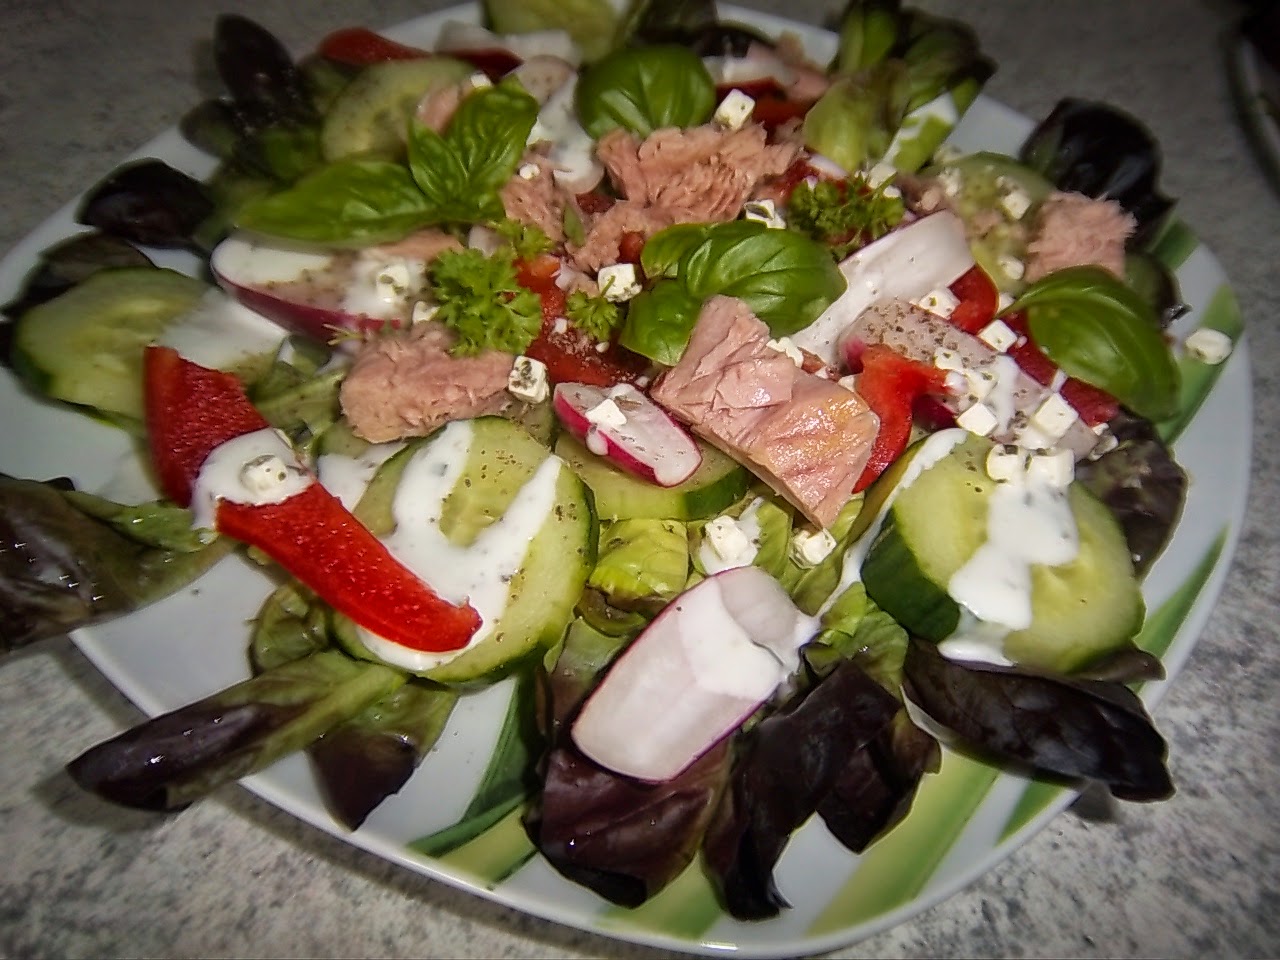 Delicious: Bunter Salat mit Thunfisch und Joghurt Dressing